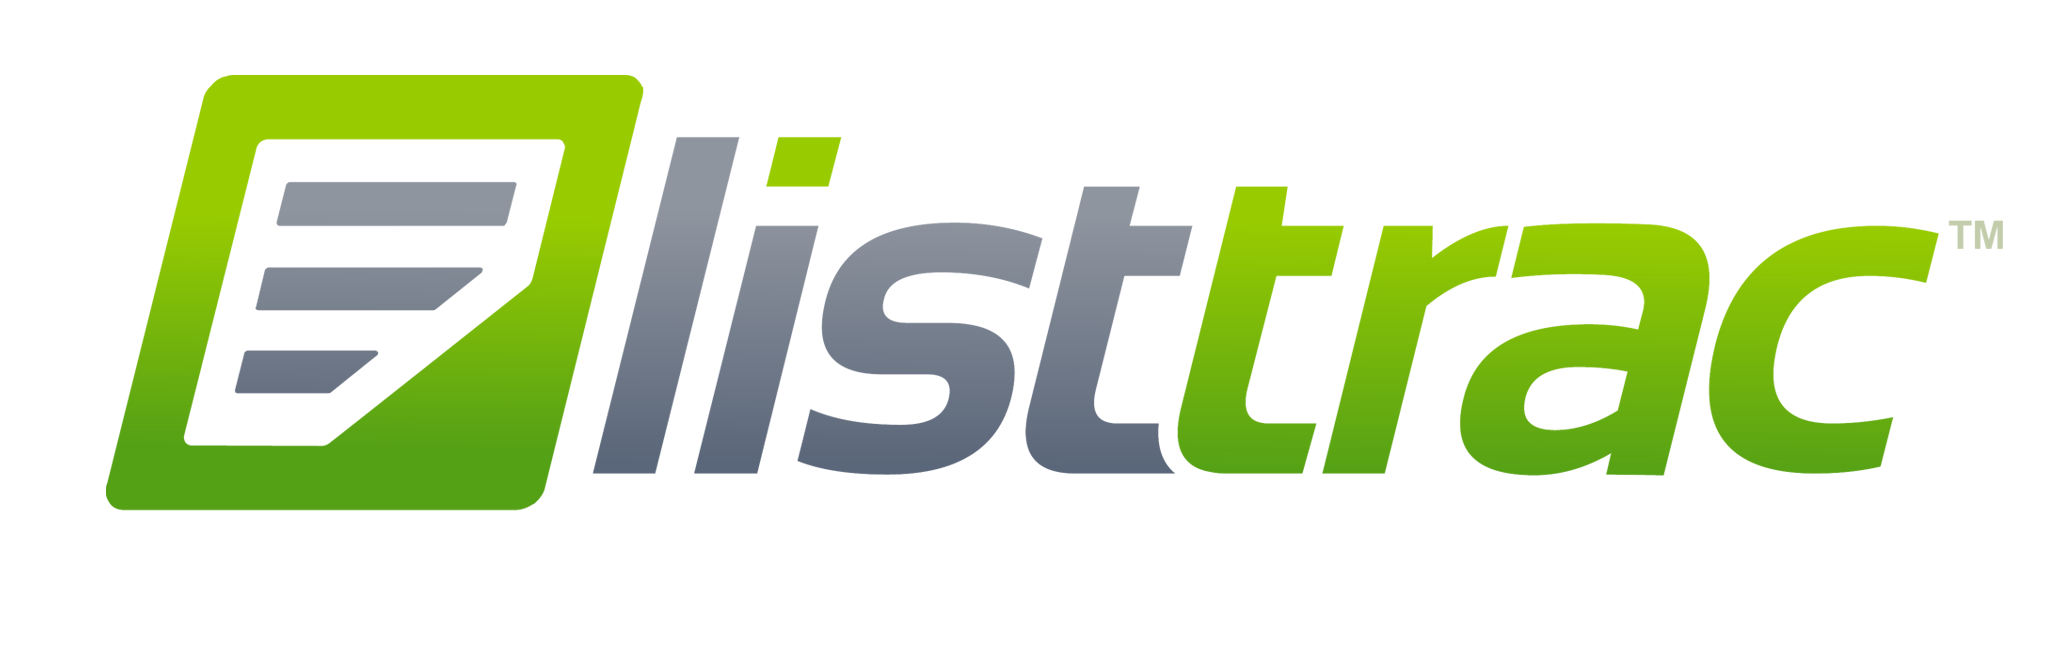 Listtrac logo12